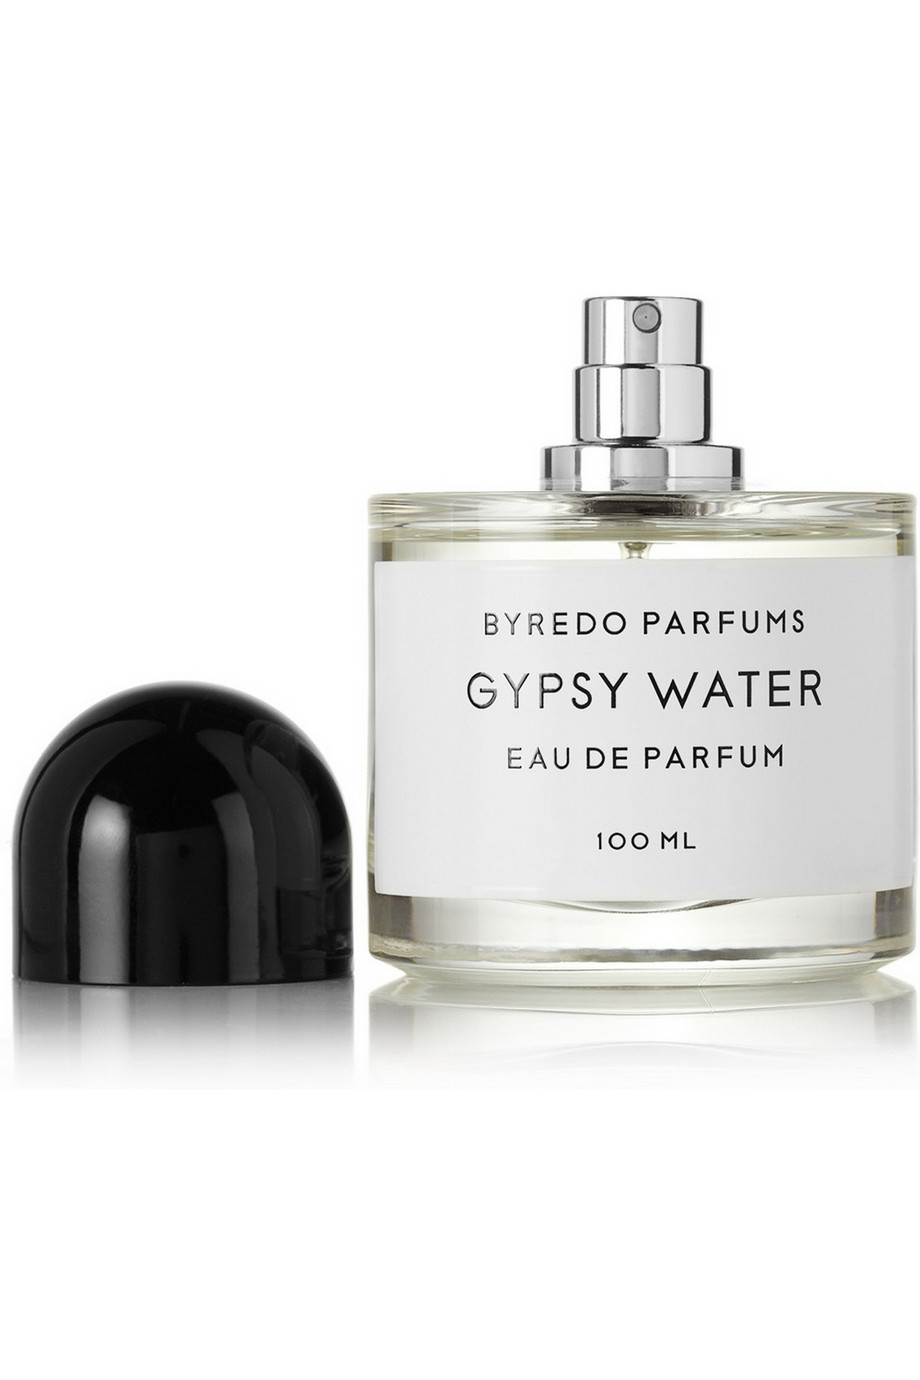 Byredo Gypsy Water Eau de Parfum - World Brand Design Society